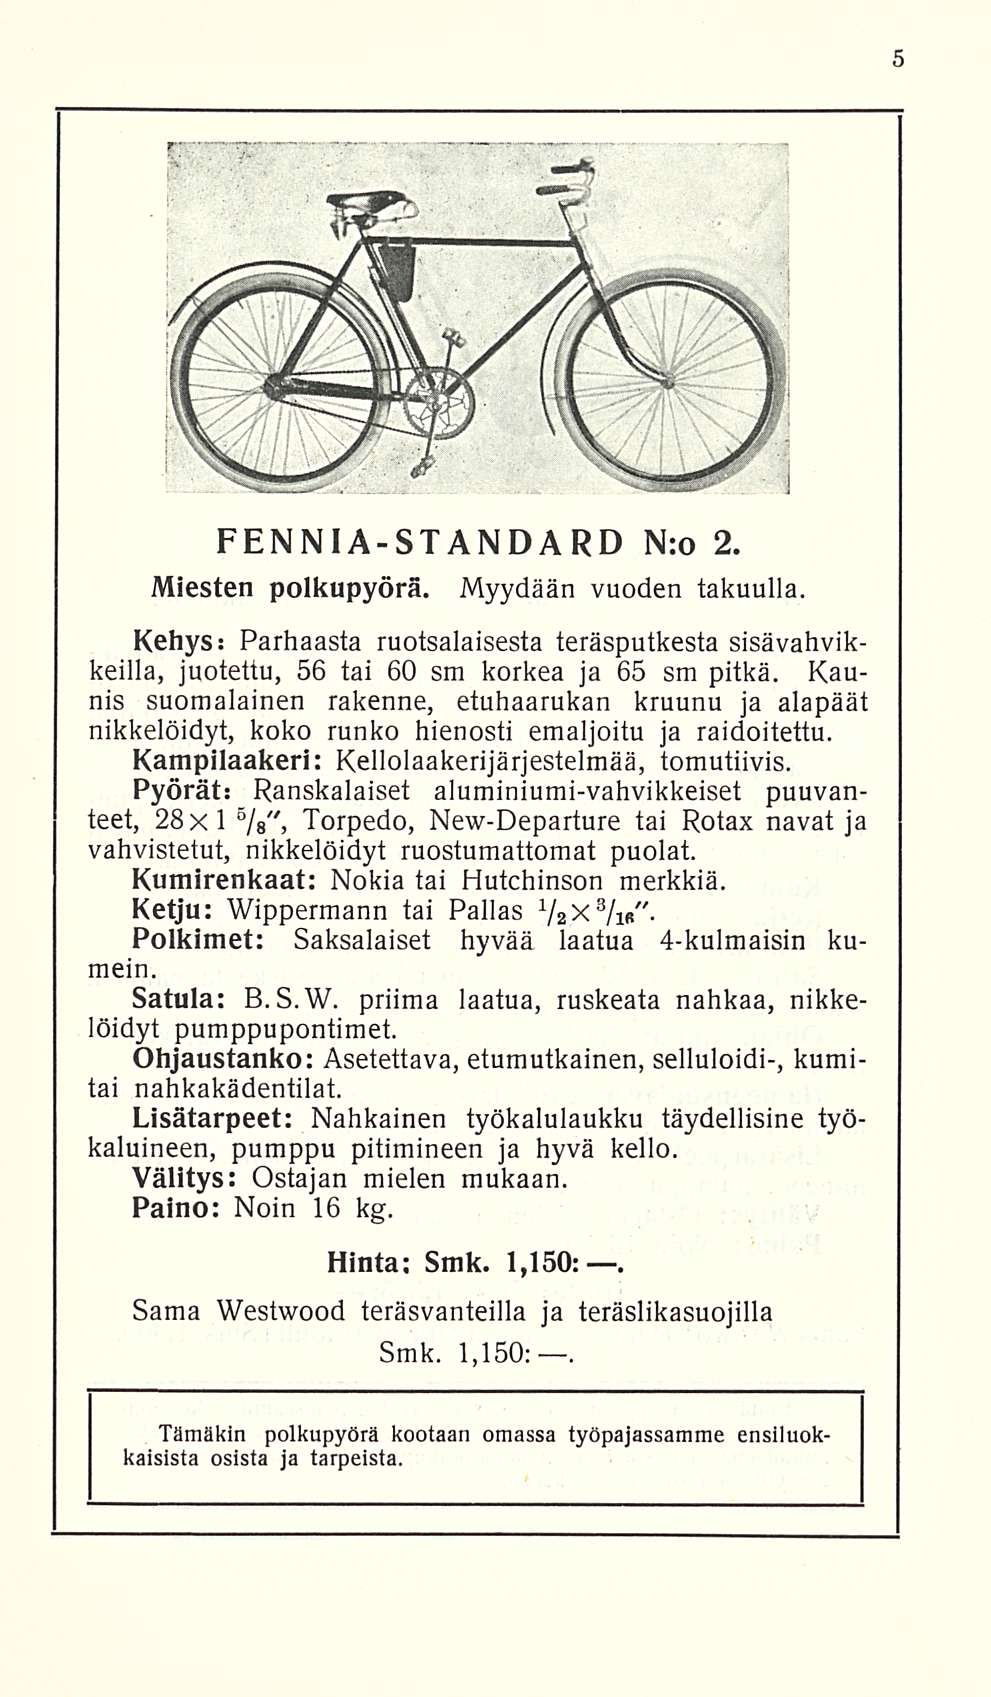 FENNIA-STANDARD Nro 2. Miesten polkupyörä. Myydään vuoden takuulla. Kehys: Parhaasta ruotsalaisesta teräsputkesta sisävahvikkeilla, juotettu, 56 tai 60 sm korkea ja 65 sm pitkä.